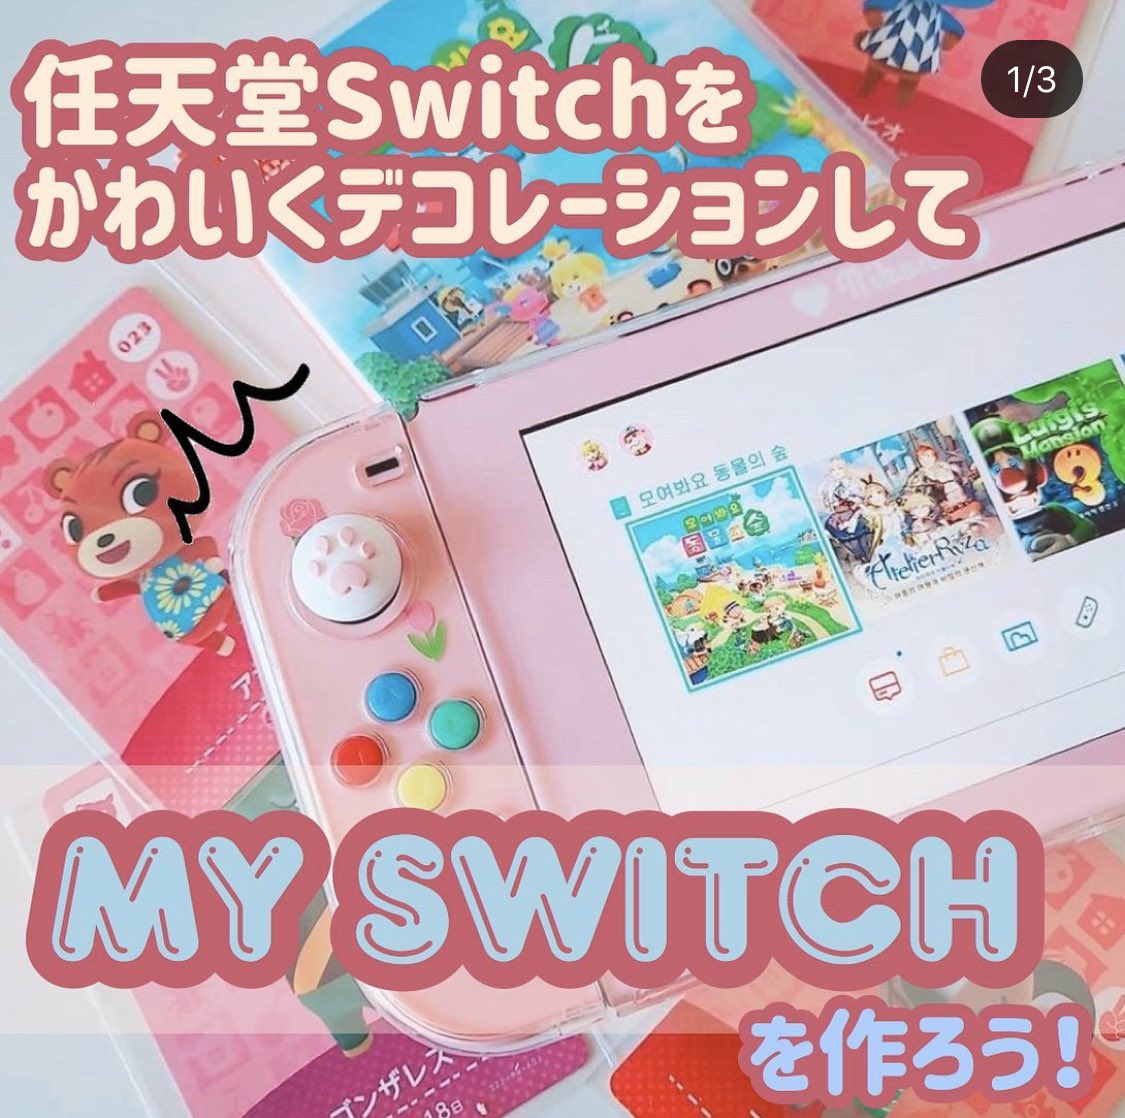 韓国情報メディア Metta お家で 任天堂switch をしている方必見 韓国女子の間ではデコレーションした My Switch が流行中 世界に一つだけのswitchを作っちゃおう 韓国情報 韓国女子 オルチャン 任天堂switch Myswitch T Co